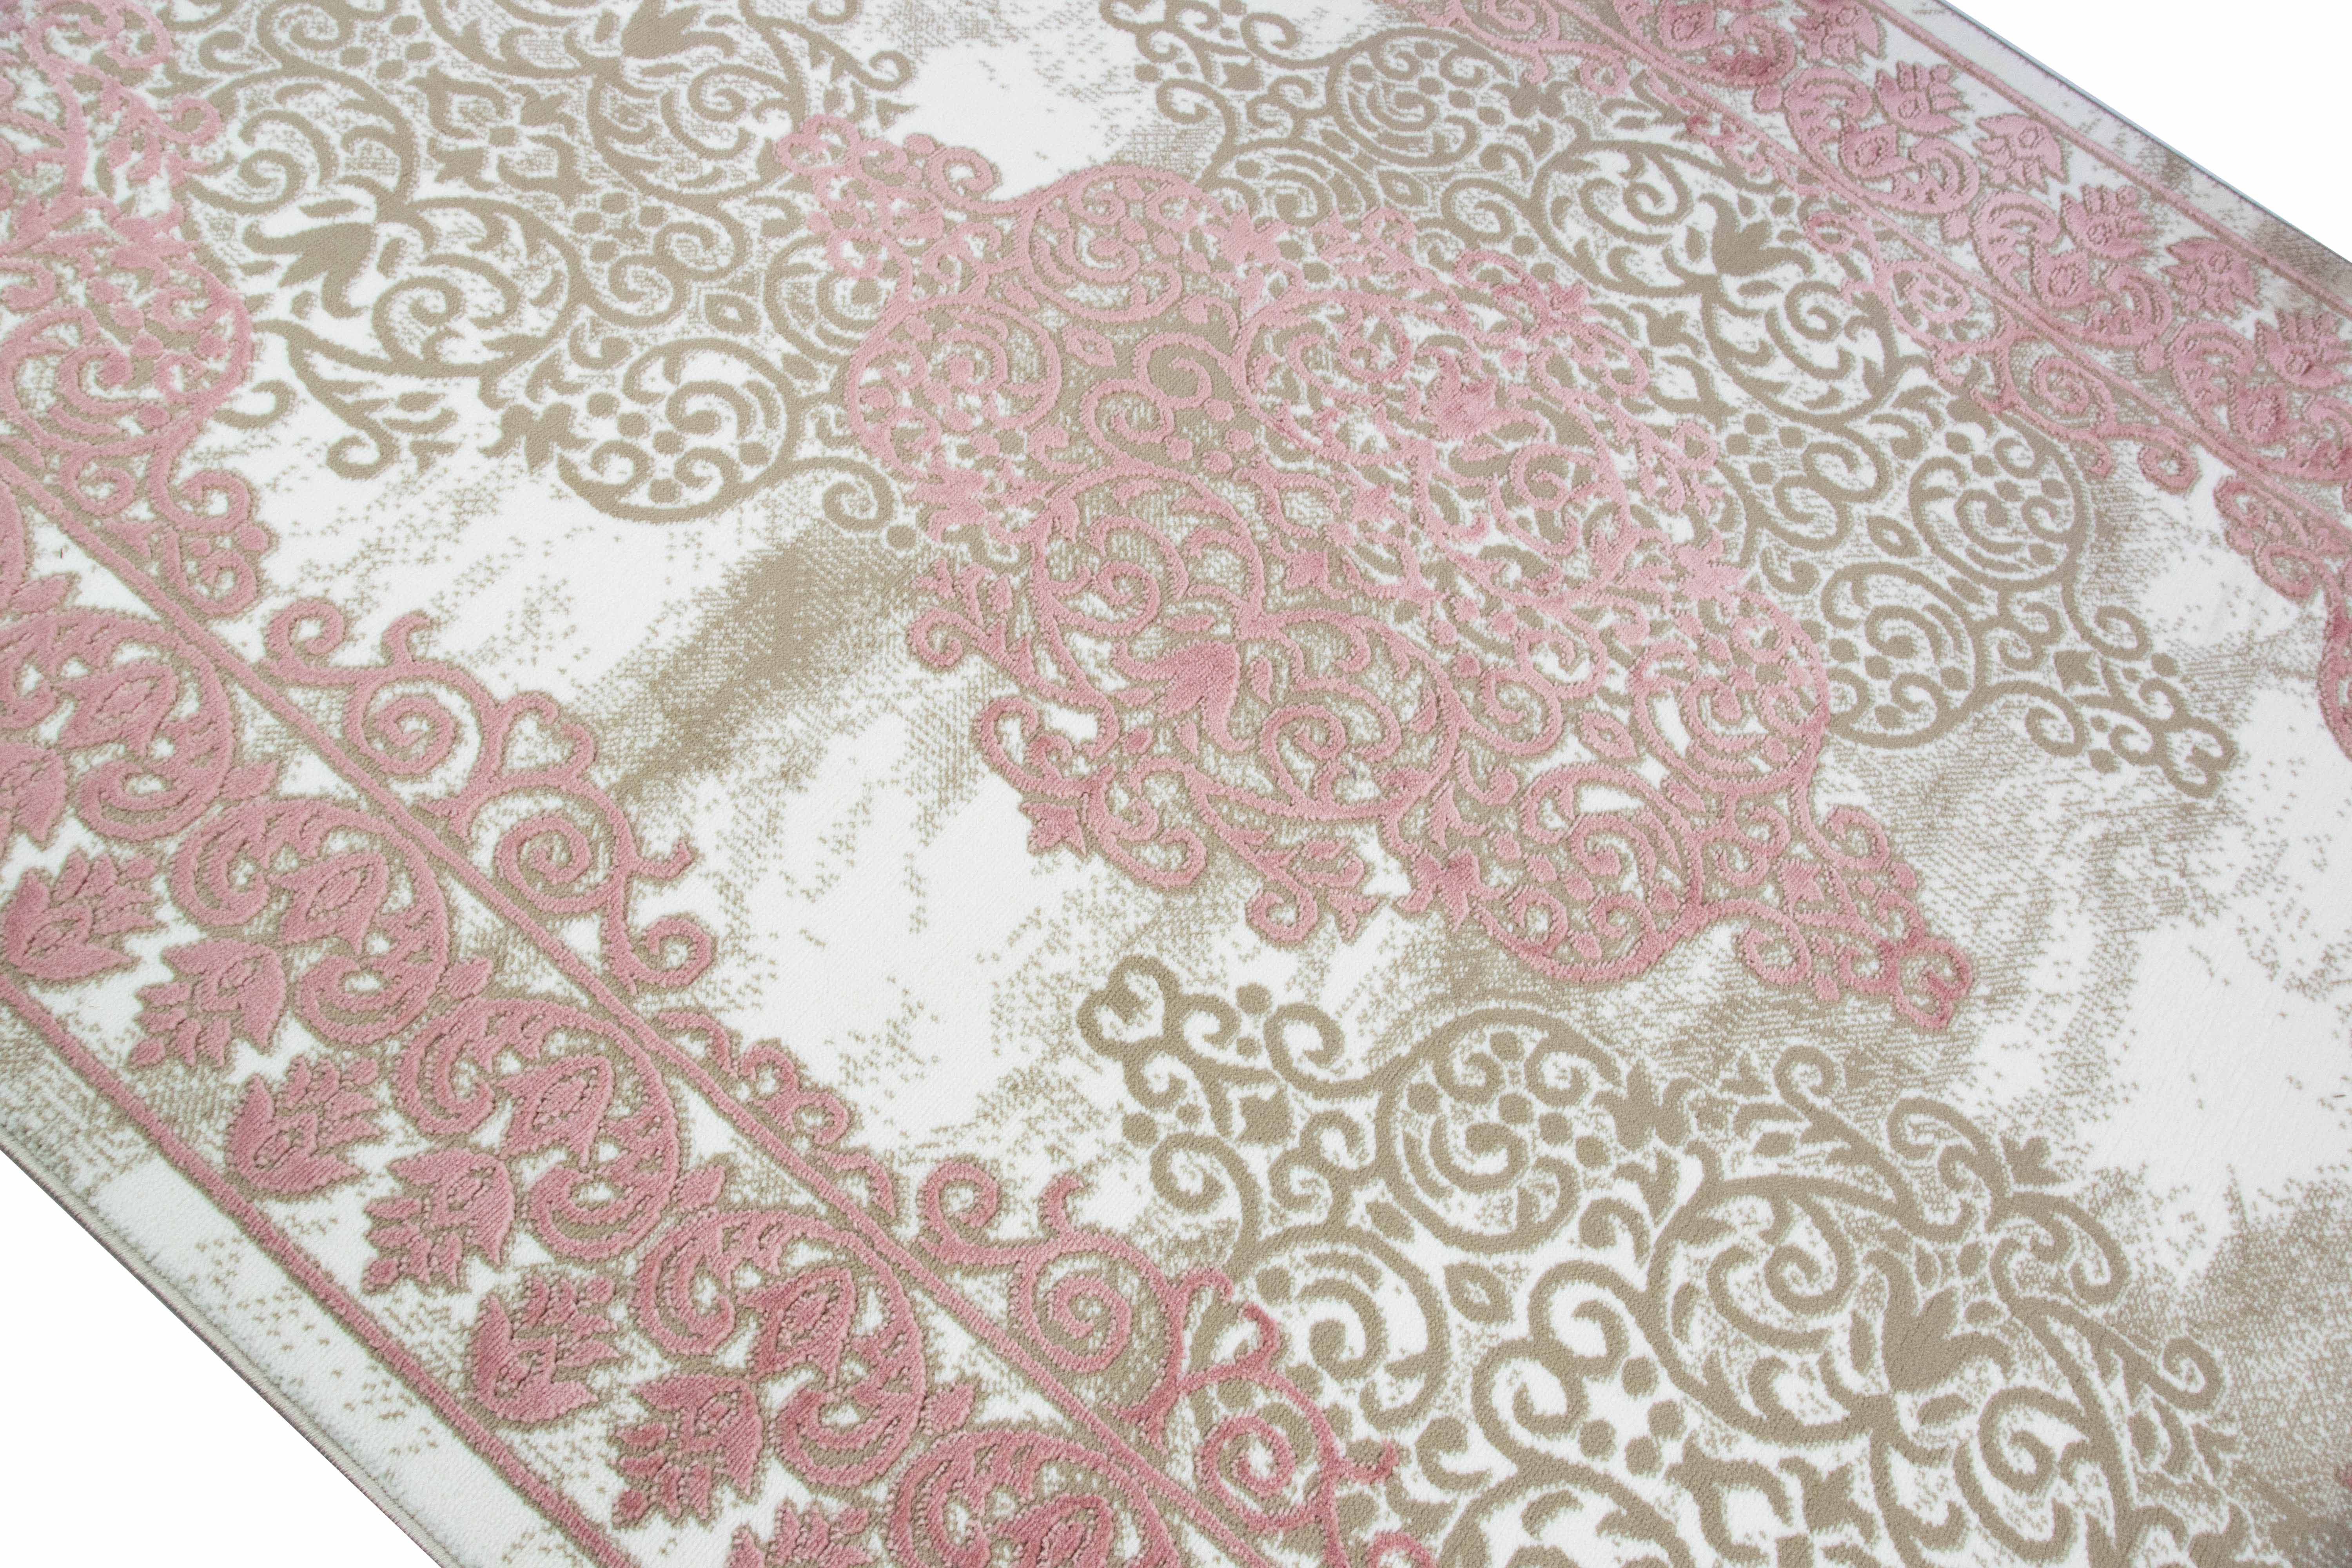 Teppich Vintage Ornamente Oriental Design Creme Beige Pink Rot 80x150cm 